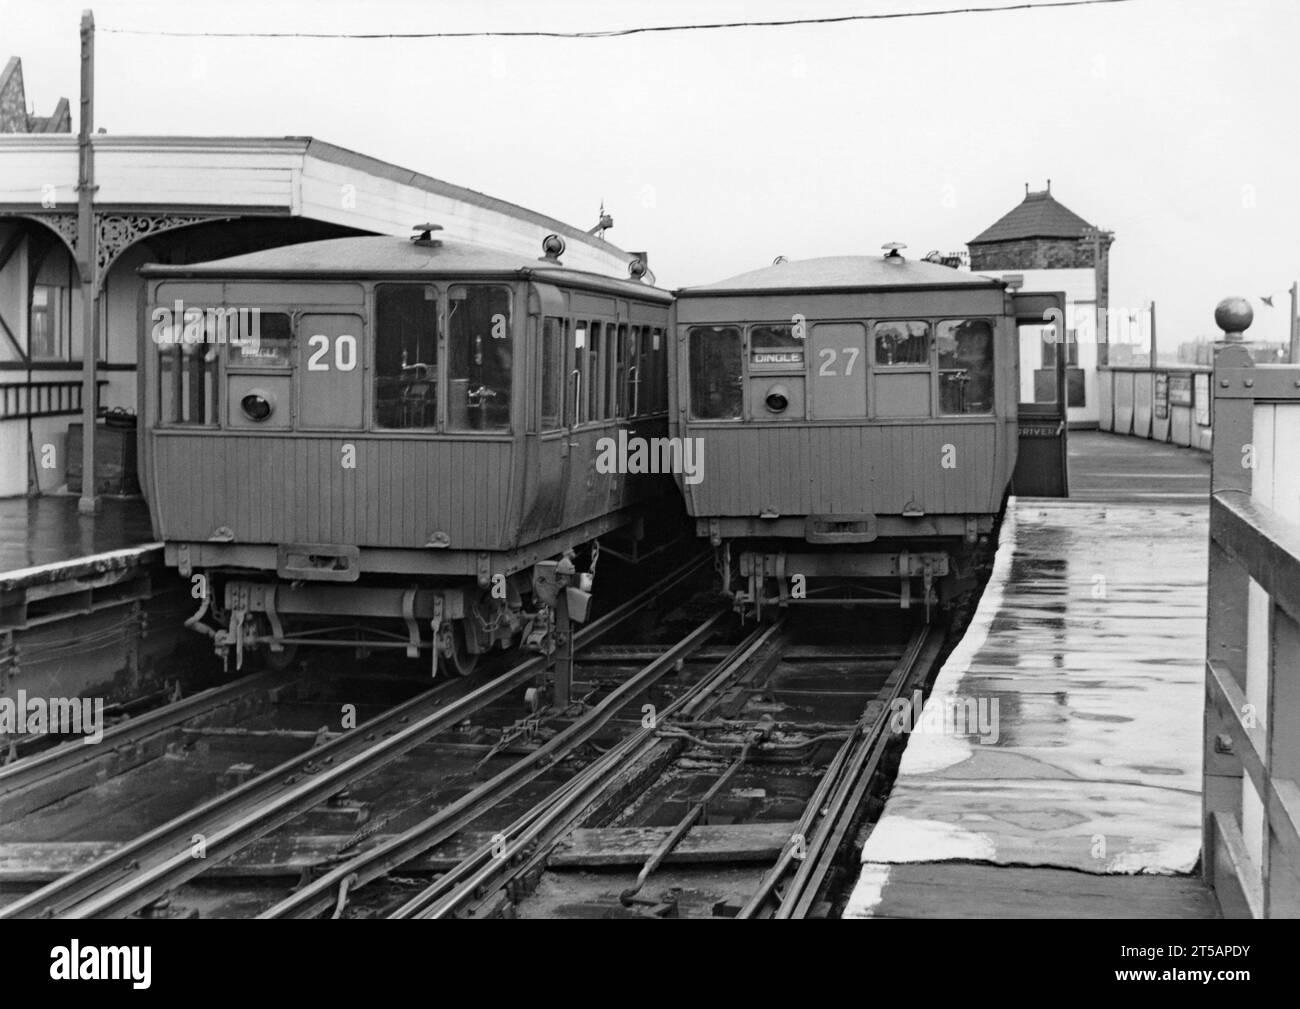 Zwei elektrische Züge auf der Liverpool Overhead Railway am Bahnhof Seaforth Sands, Merseyside, England, um 1950. Die Holzzüge 20 und 27 tragen auf ihren Zieltafeln die Bezeichnung „Dingle“, den Endbahnhof am anderen Ende der Strecke. Die Liverpool Overhead Railway verkehrte entlang der Liverpool Docks und wurde 1893 eröffnet. Sie war die weltweit erste elektrische Hochbahn und die zweitälteste elektrische U-Bahn der Welt. Auf ihrem Höhepunkt nutzten jedes Jahr fast 20 Millionen Menschen die Bahn. Ein Bericht aus dem Jahr 1955 zeigte, dass es unerschwingliche Reparaturen erforderte und die Bahn 1956 stilllegte. Stockfoto